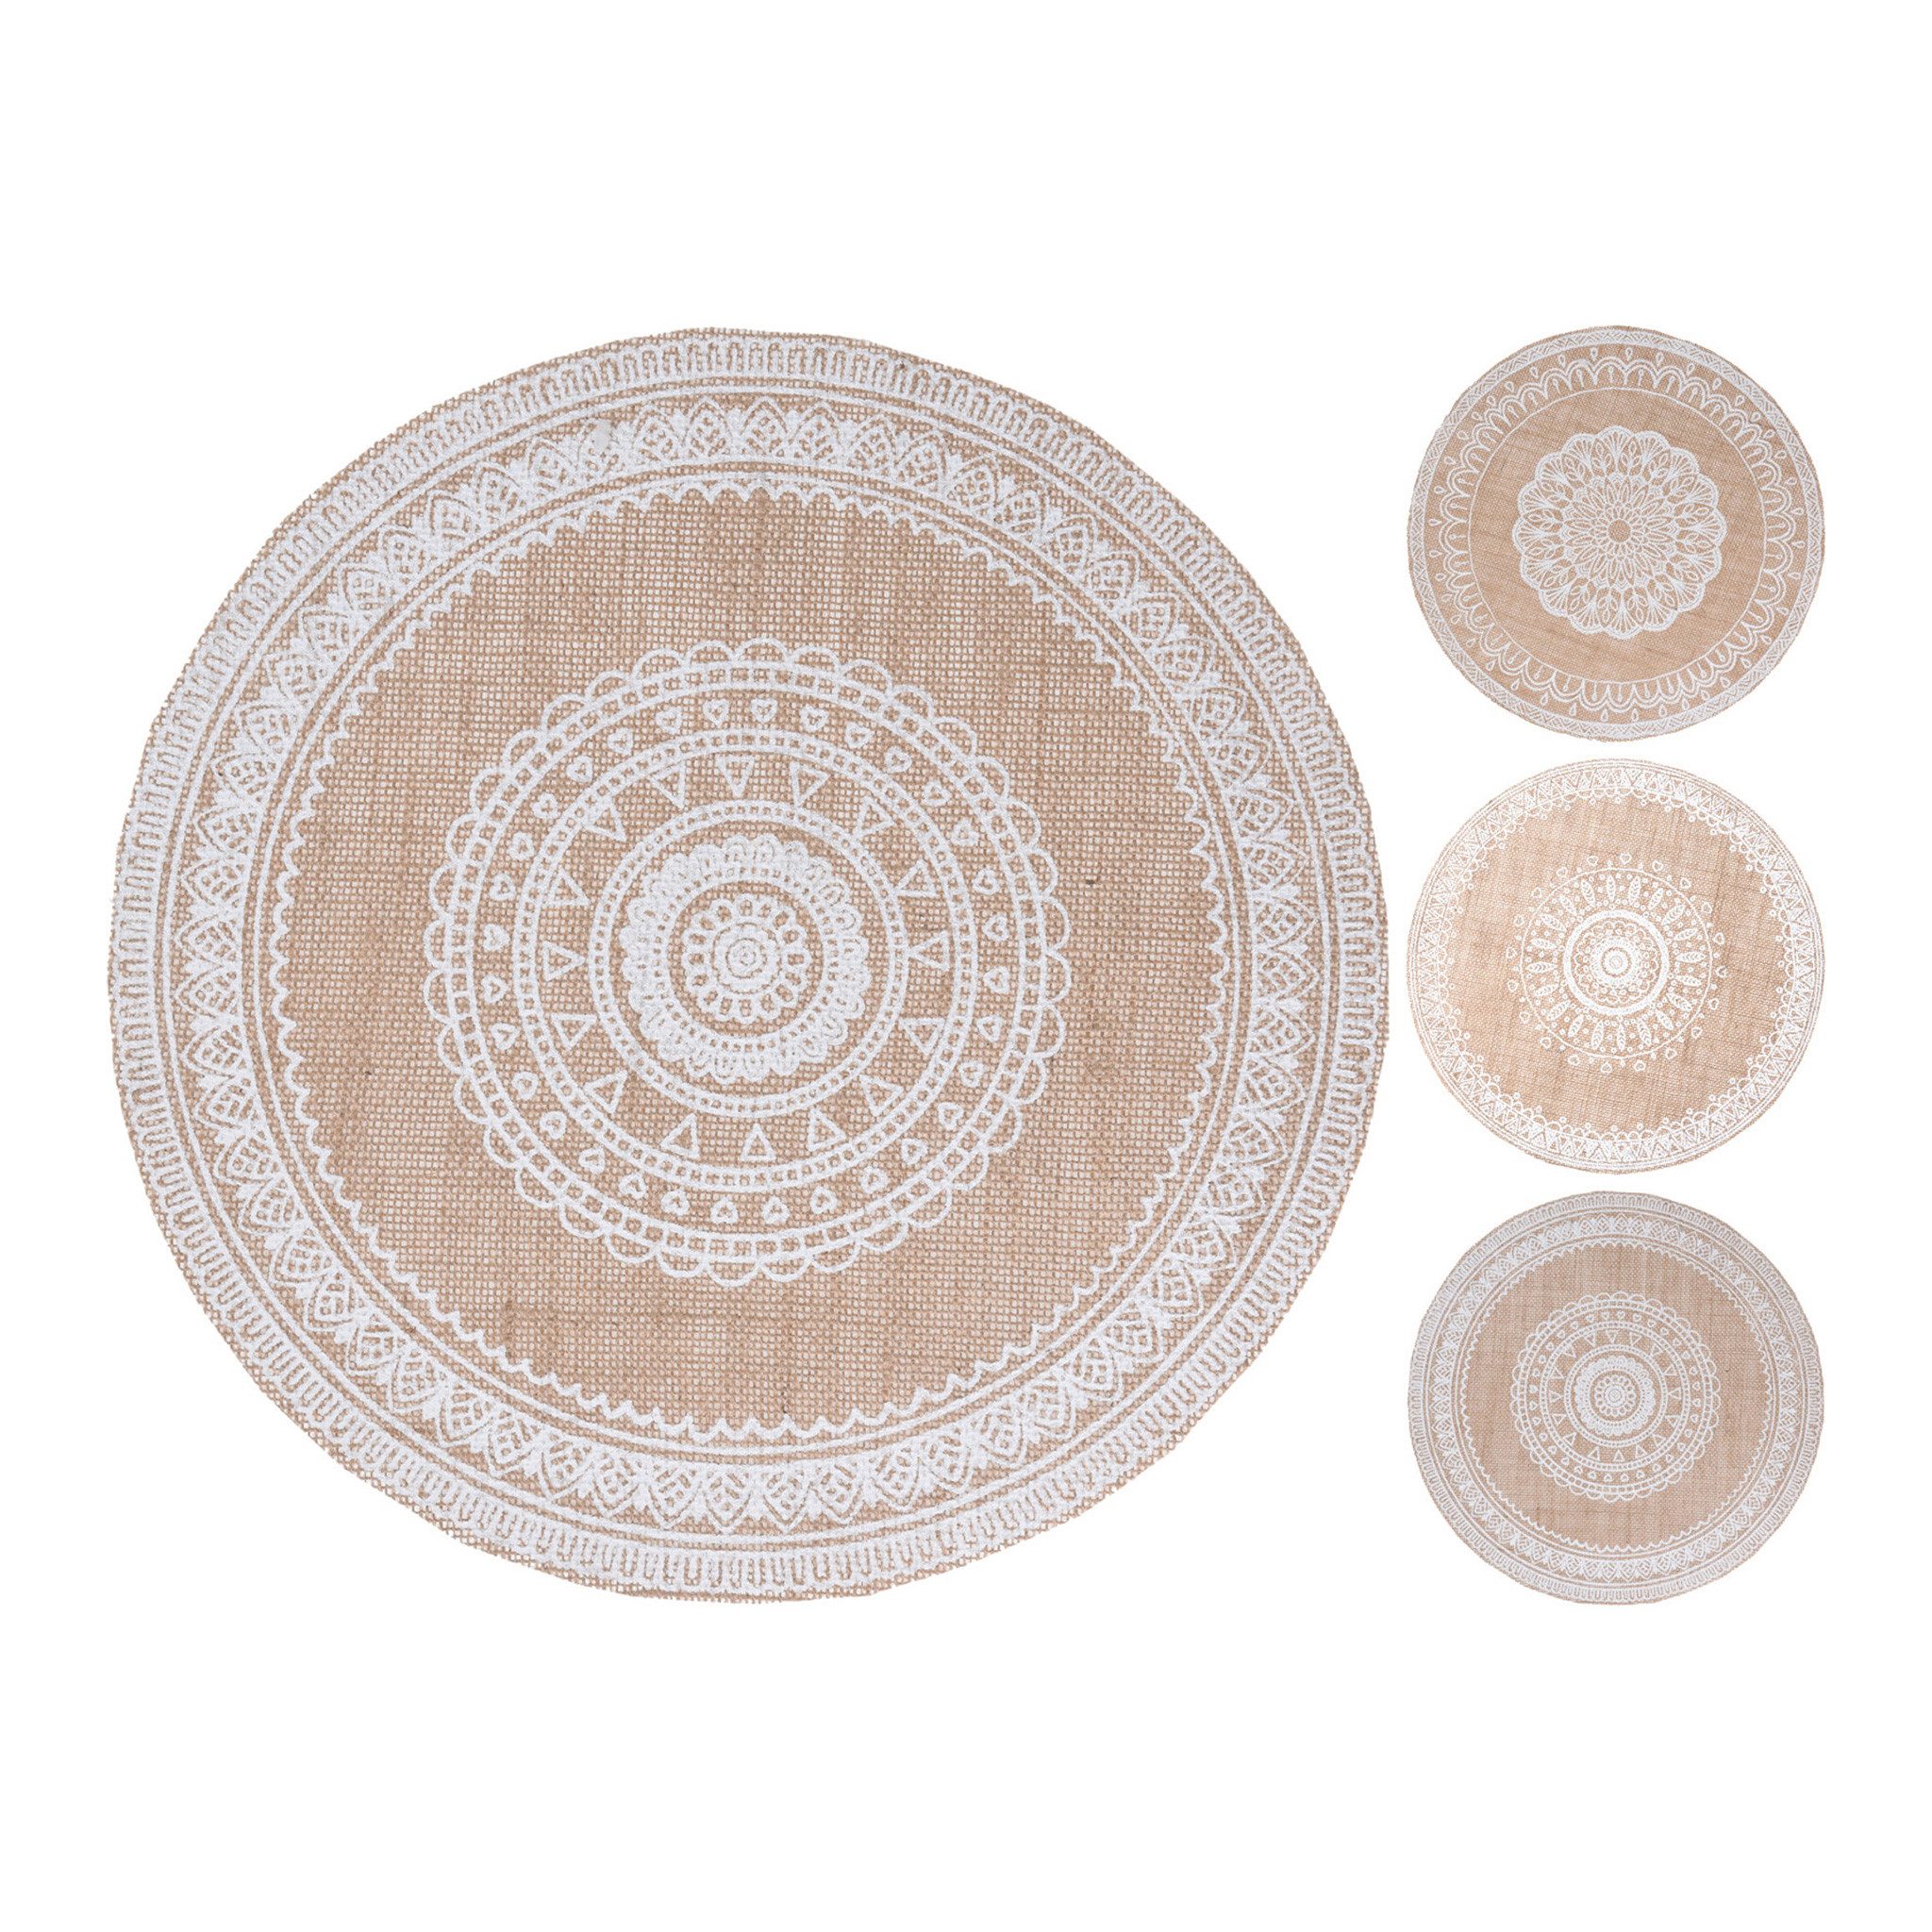 Platzset, Home & styling collection, Tischsets rund Jute 38cm Ornament Muster 4 Stück sort. Beige / Weiß